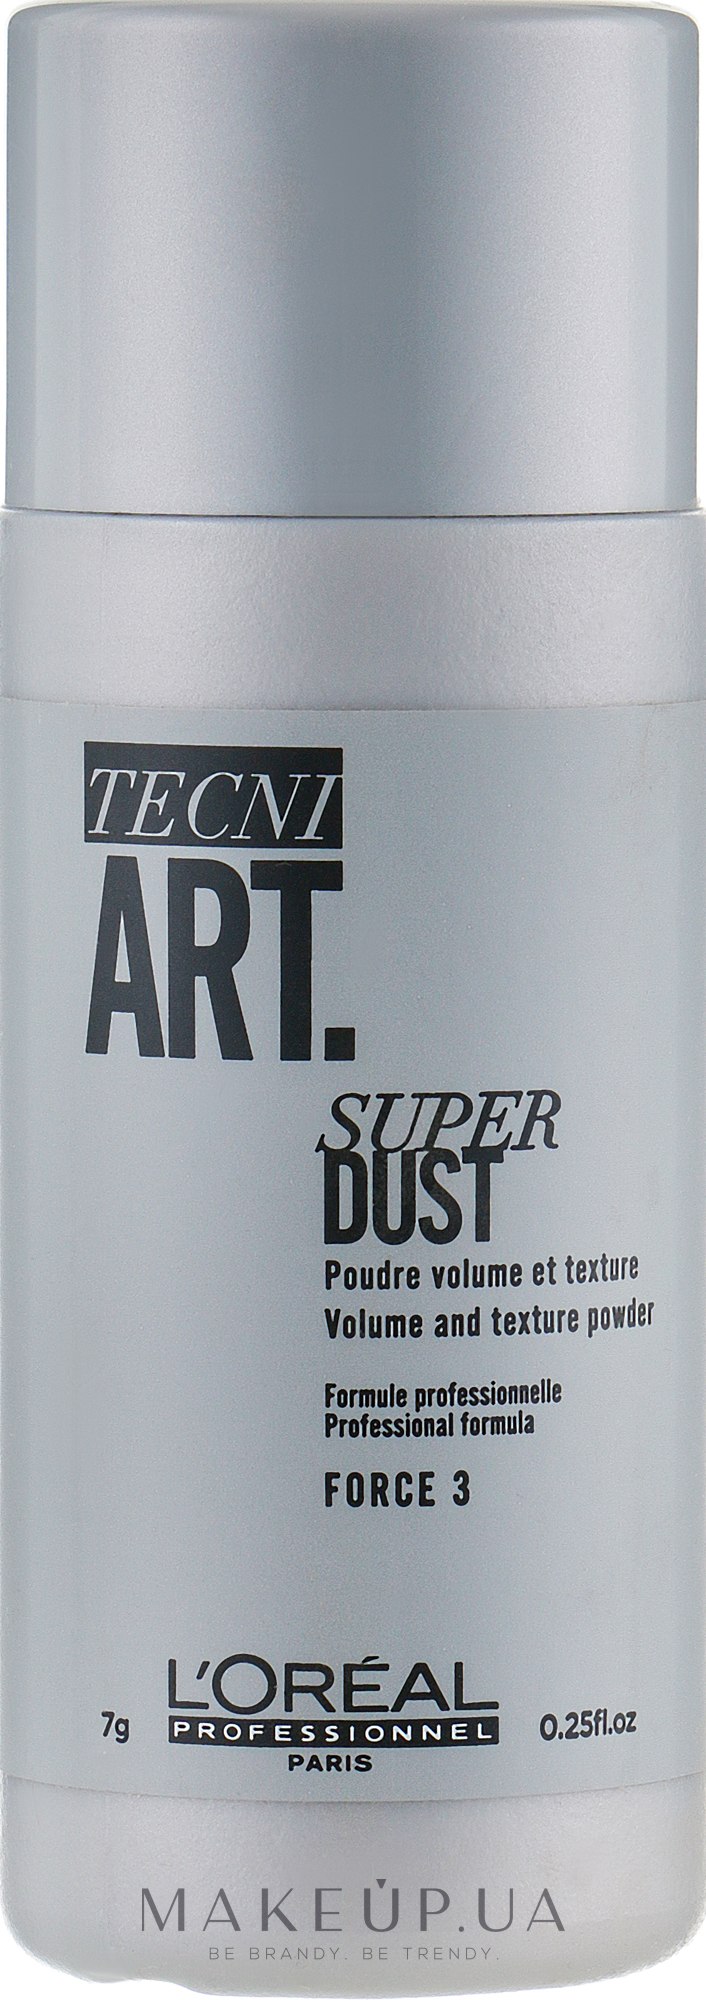 Пудра для придания объема волосам - L'Oreal Professionnel Tecni.art Super Dust — фото 7g